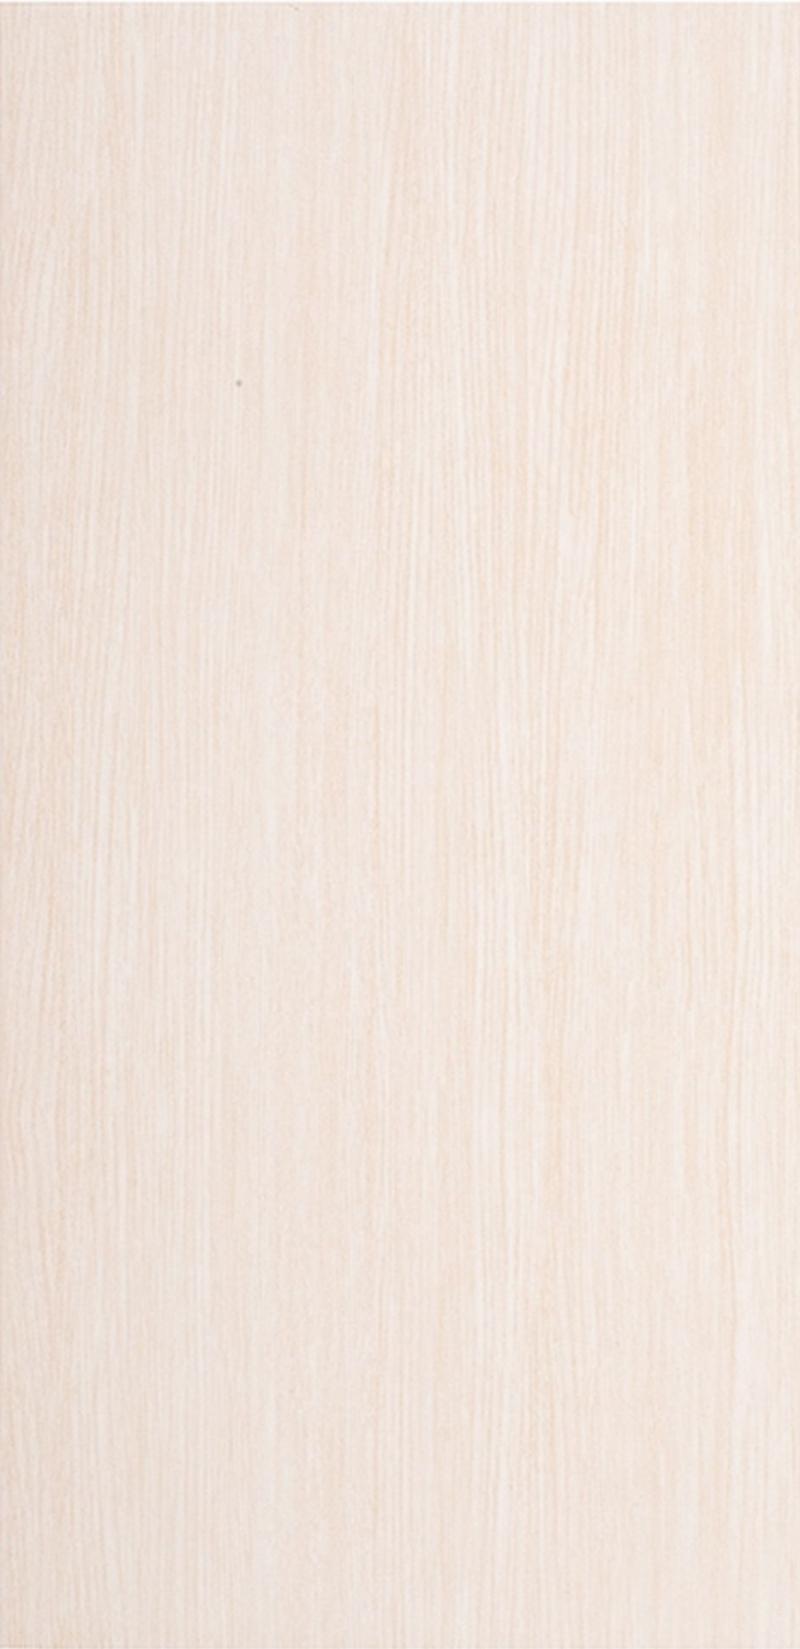 Плитка настенная «Наоми» 19.8x39.8 см 1.58 м2 цвет белый